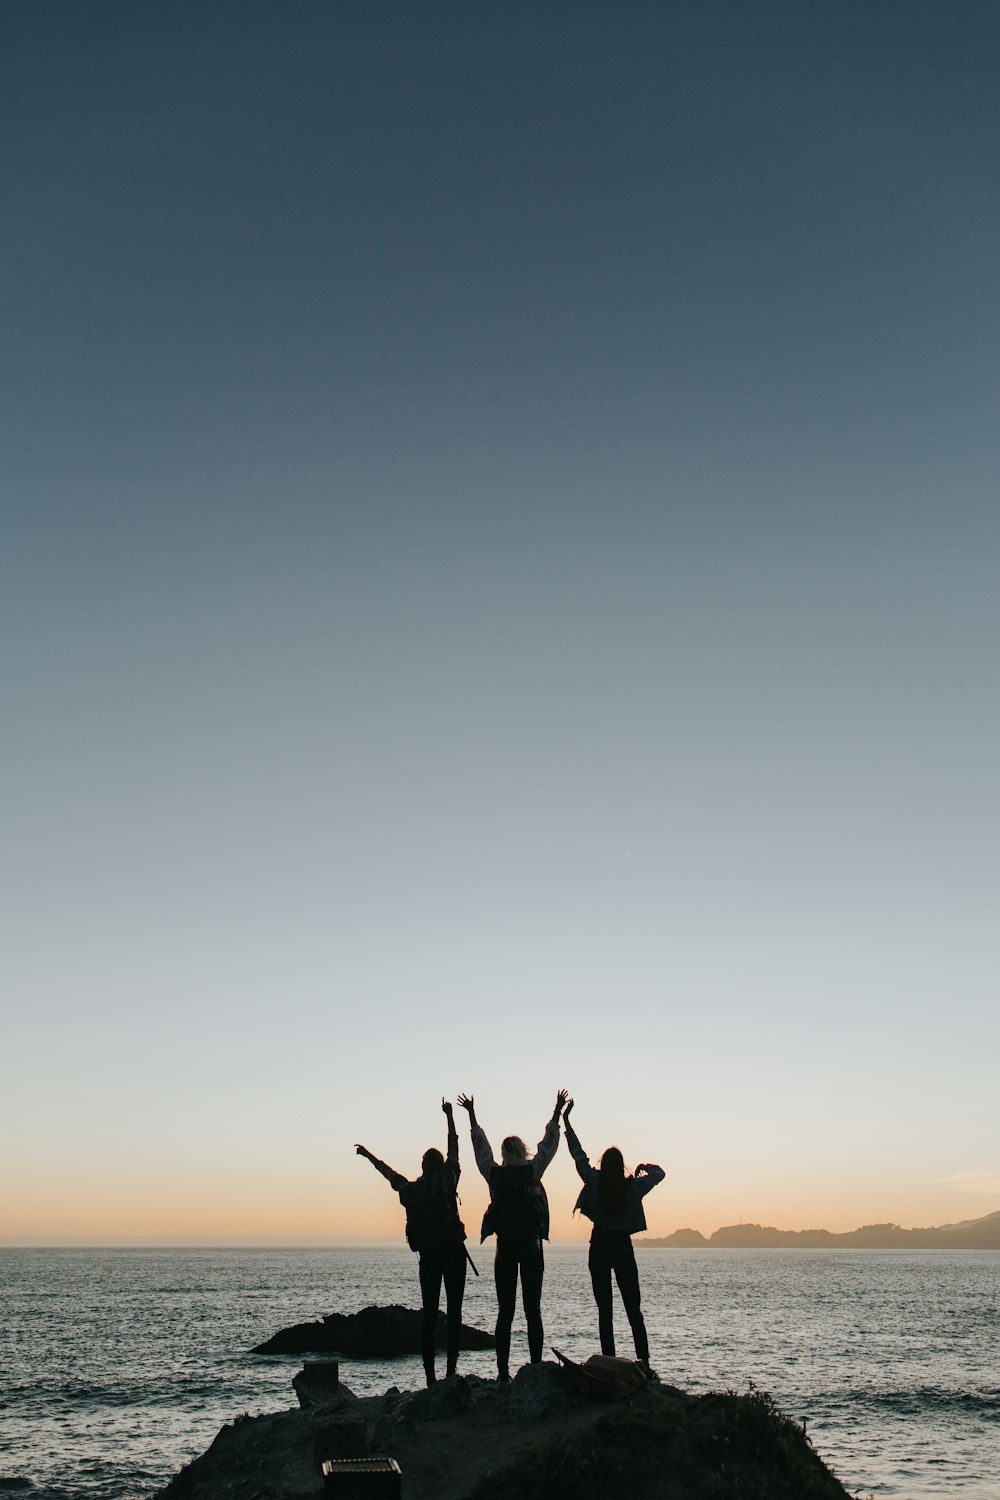 Fotografia di silhouette di persone che alzano le mani mentre si trovano sull'isola